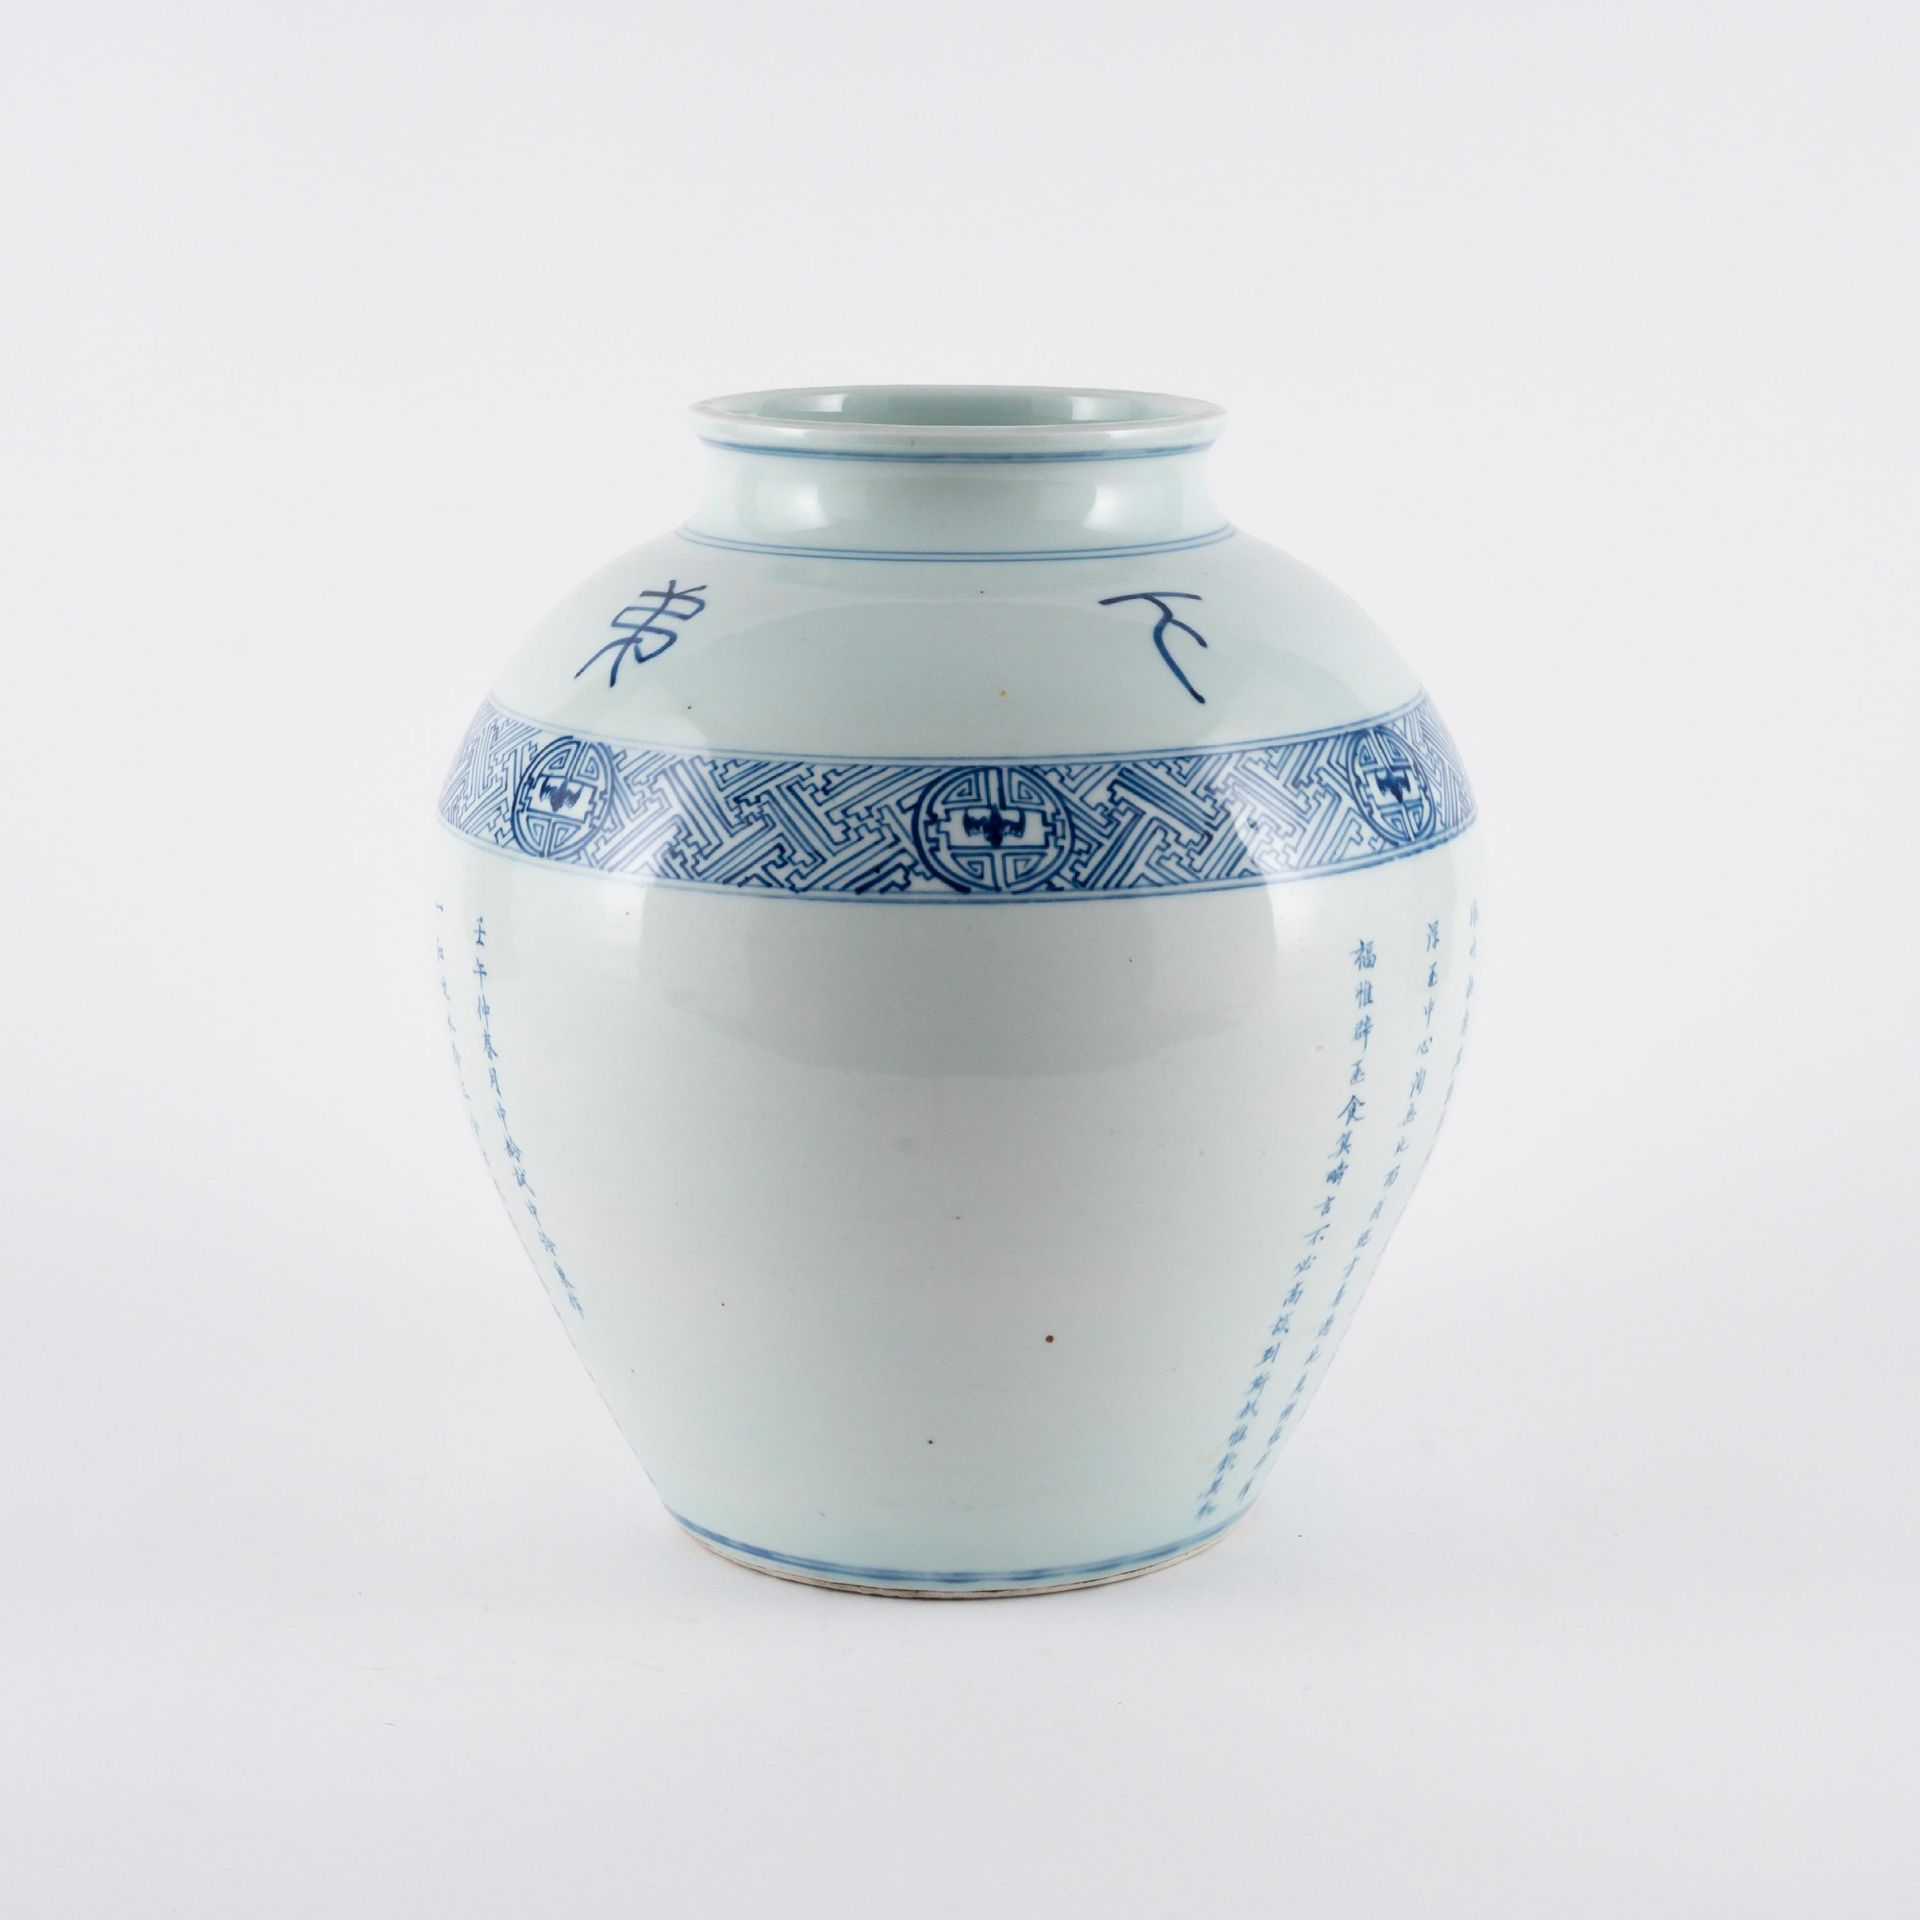 Gebauchte Vase mit chinesischen Schriftzeichen - Image 2 of 6